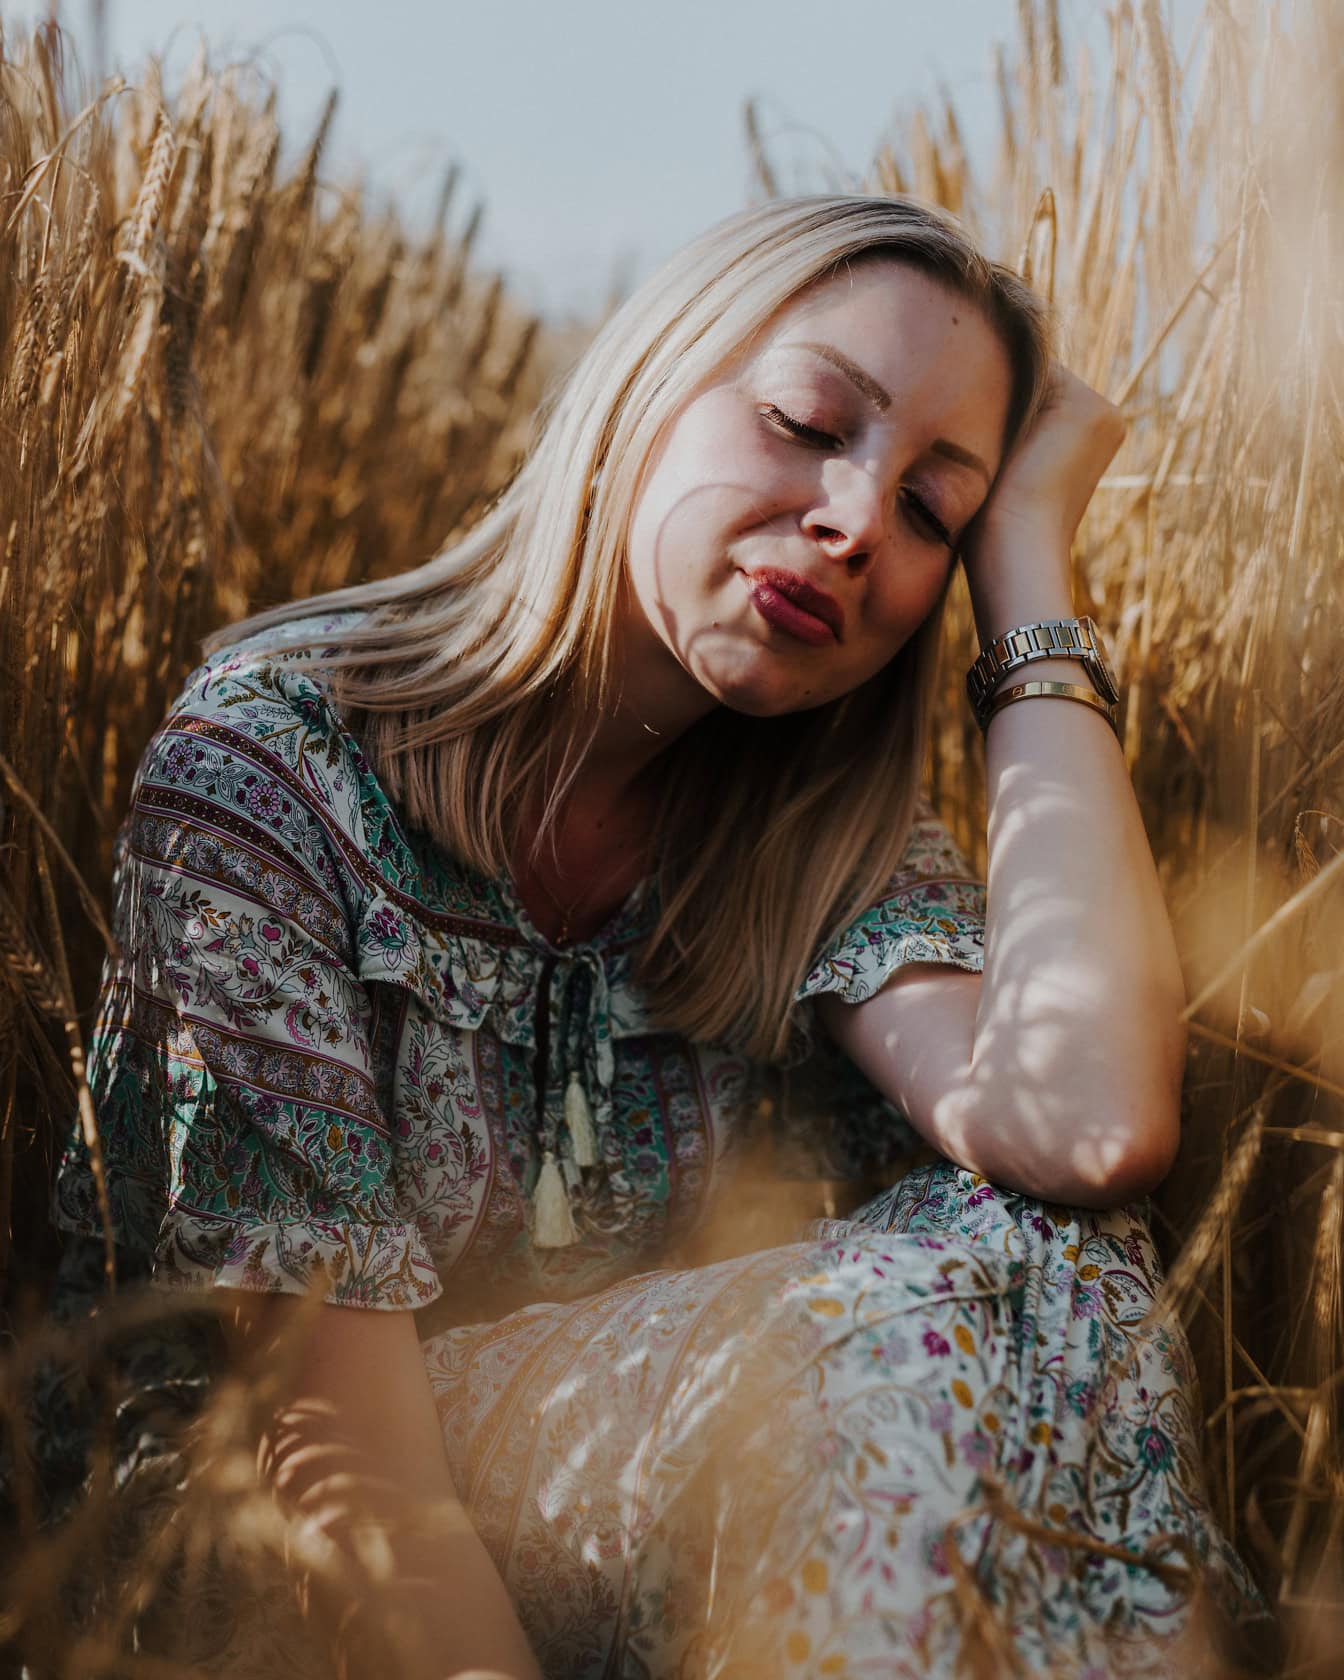 Portræt af en ung smuk blond kvinde, der sidder i en hvedemark og nyder solbadning